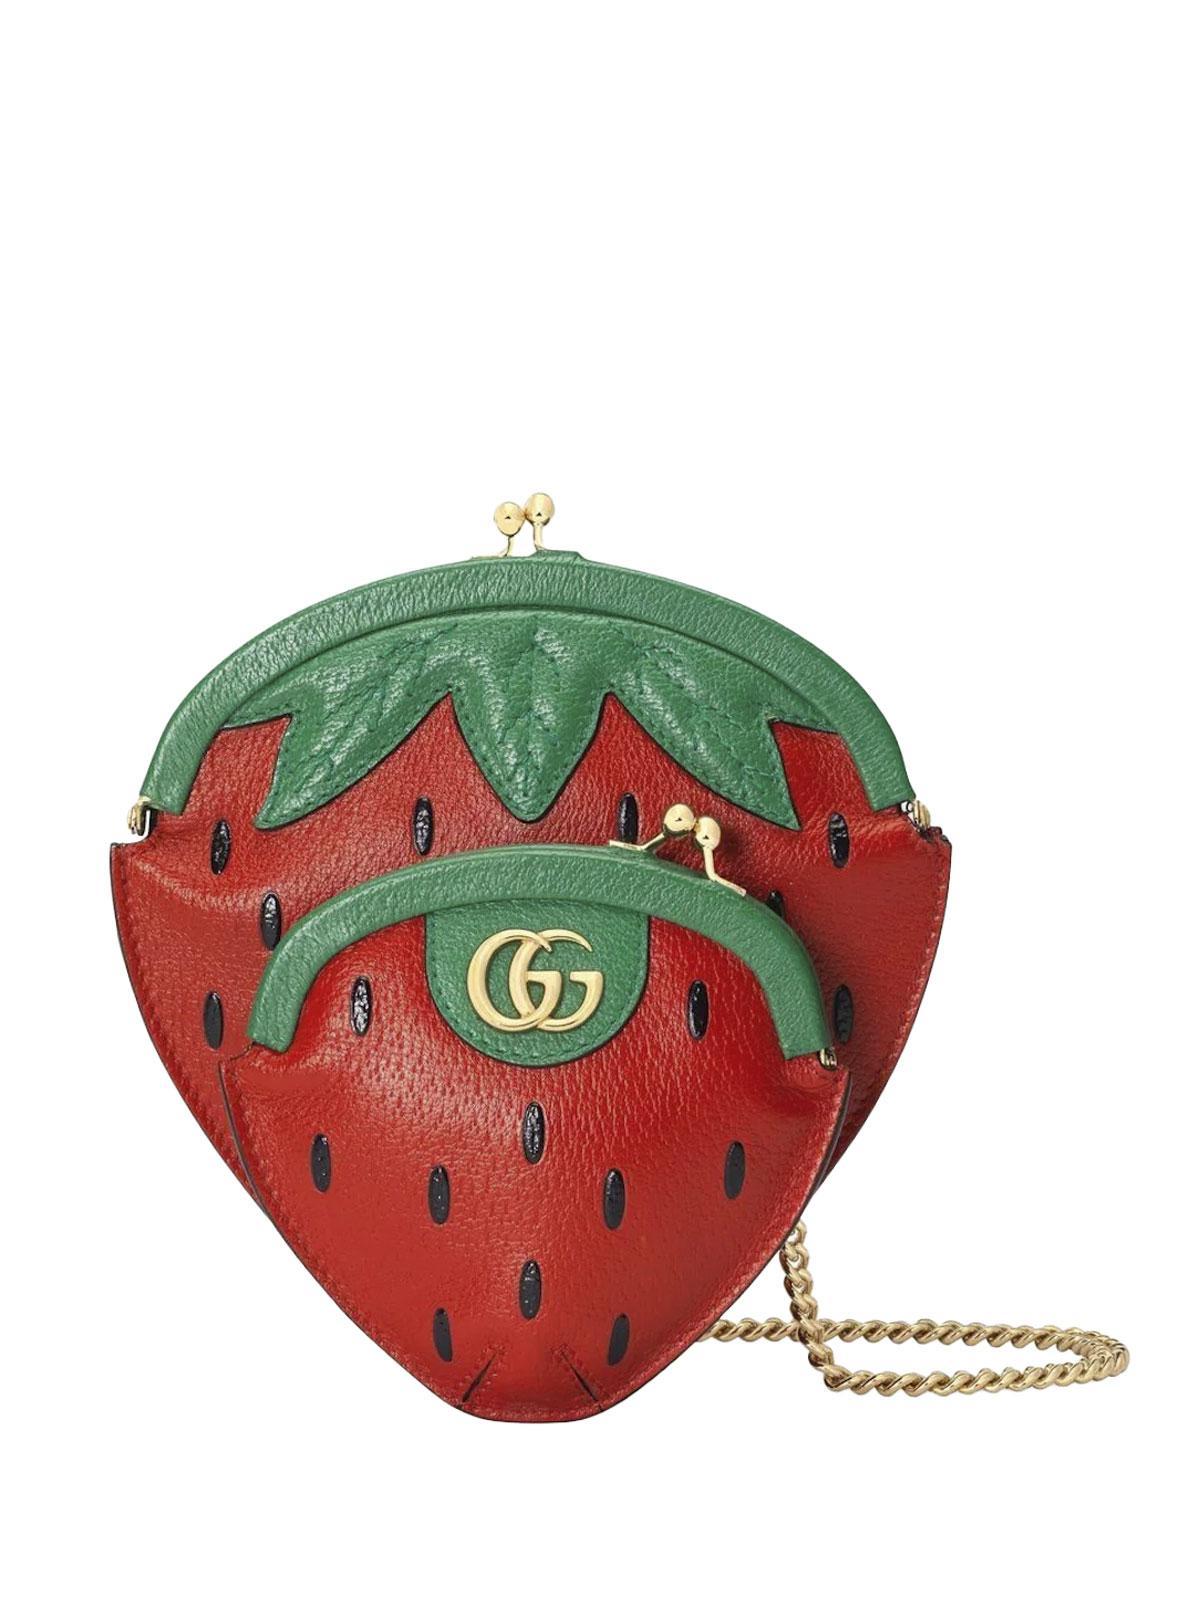 Sac fraise, Gucci, 1 900 euros, gucci.com